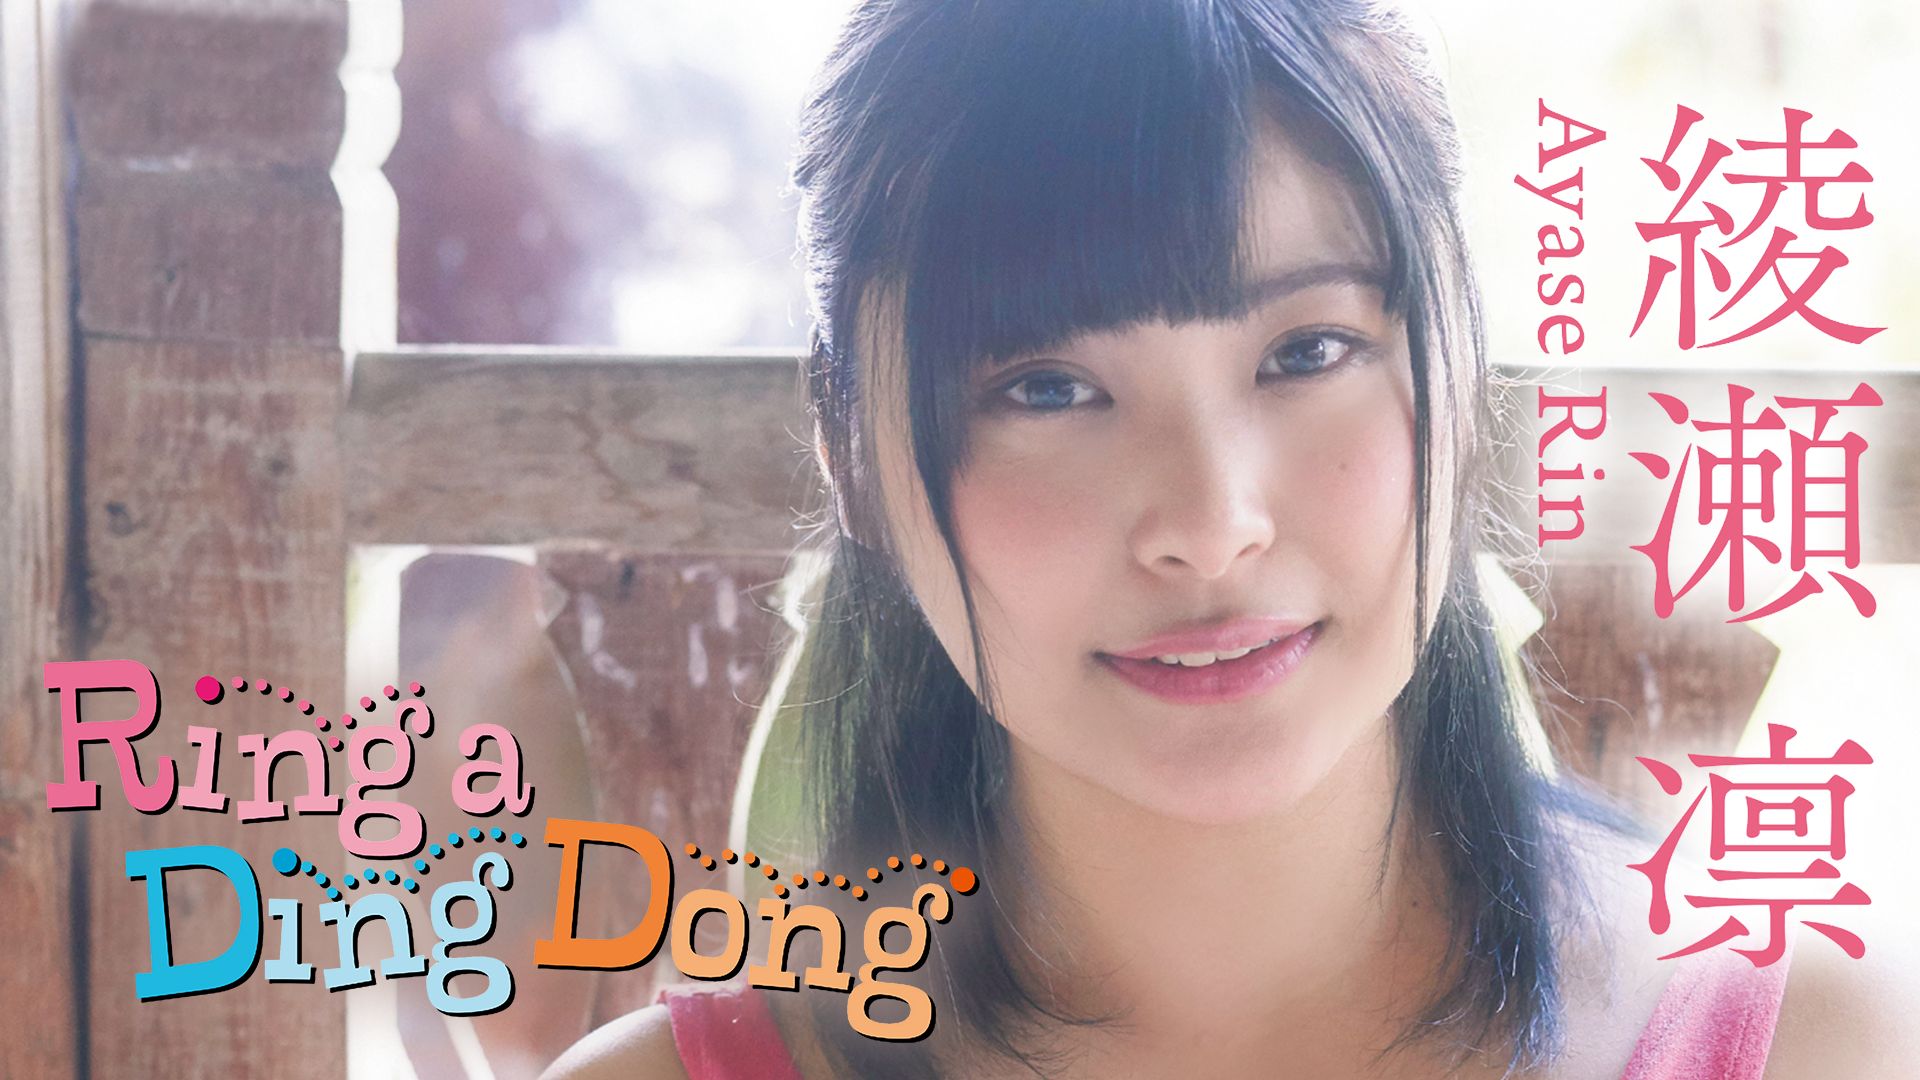 綾瀬凛 Ring a Ding Dong